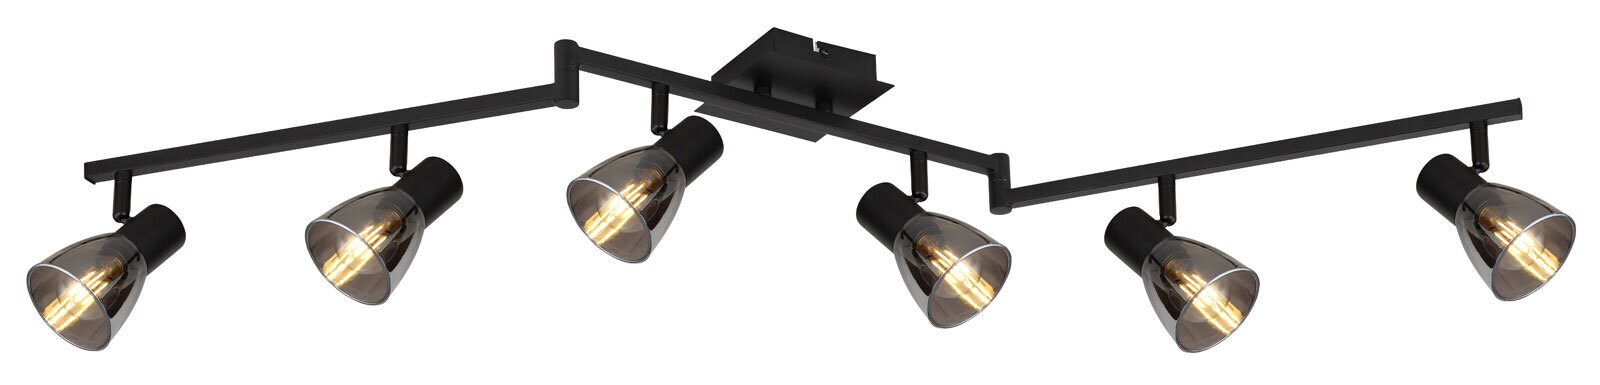 GLOBO Retrofit Deckenlampe mit 6 Spots CLAUDE 117 cm schwarz /rauchfarbig